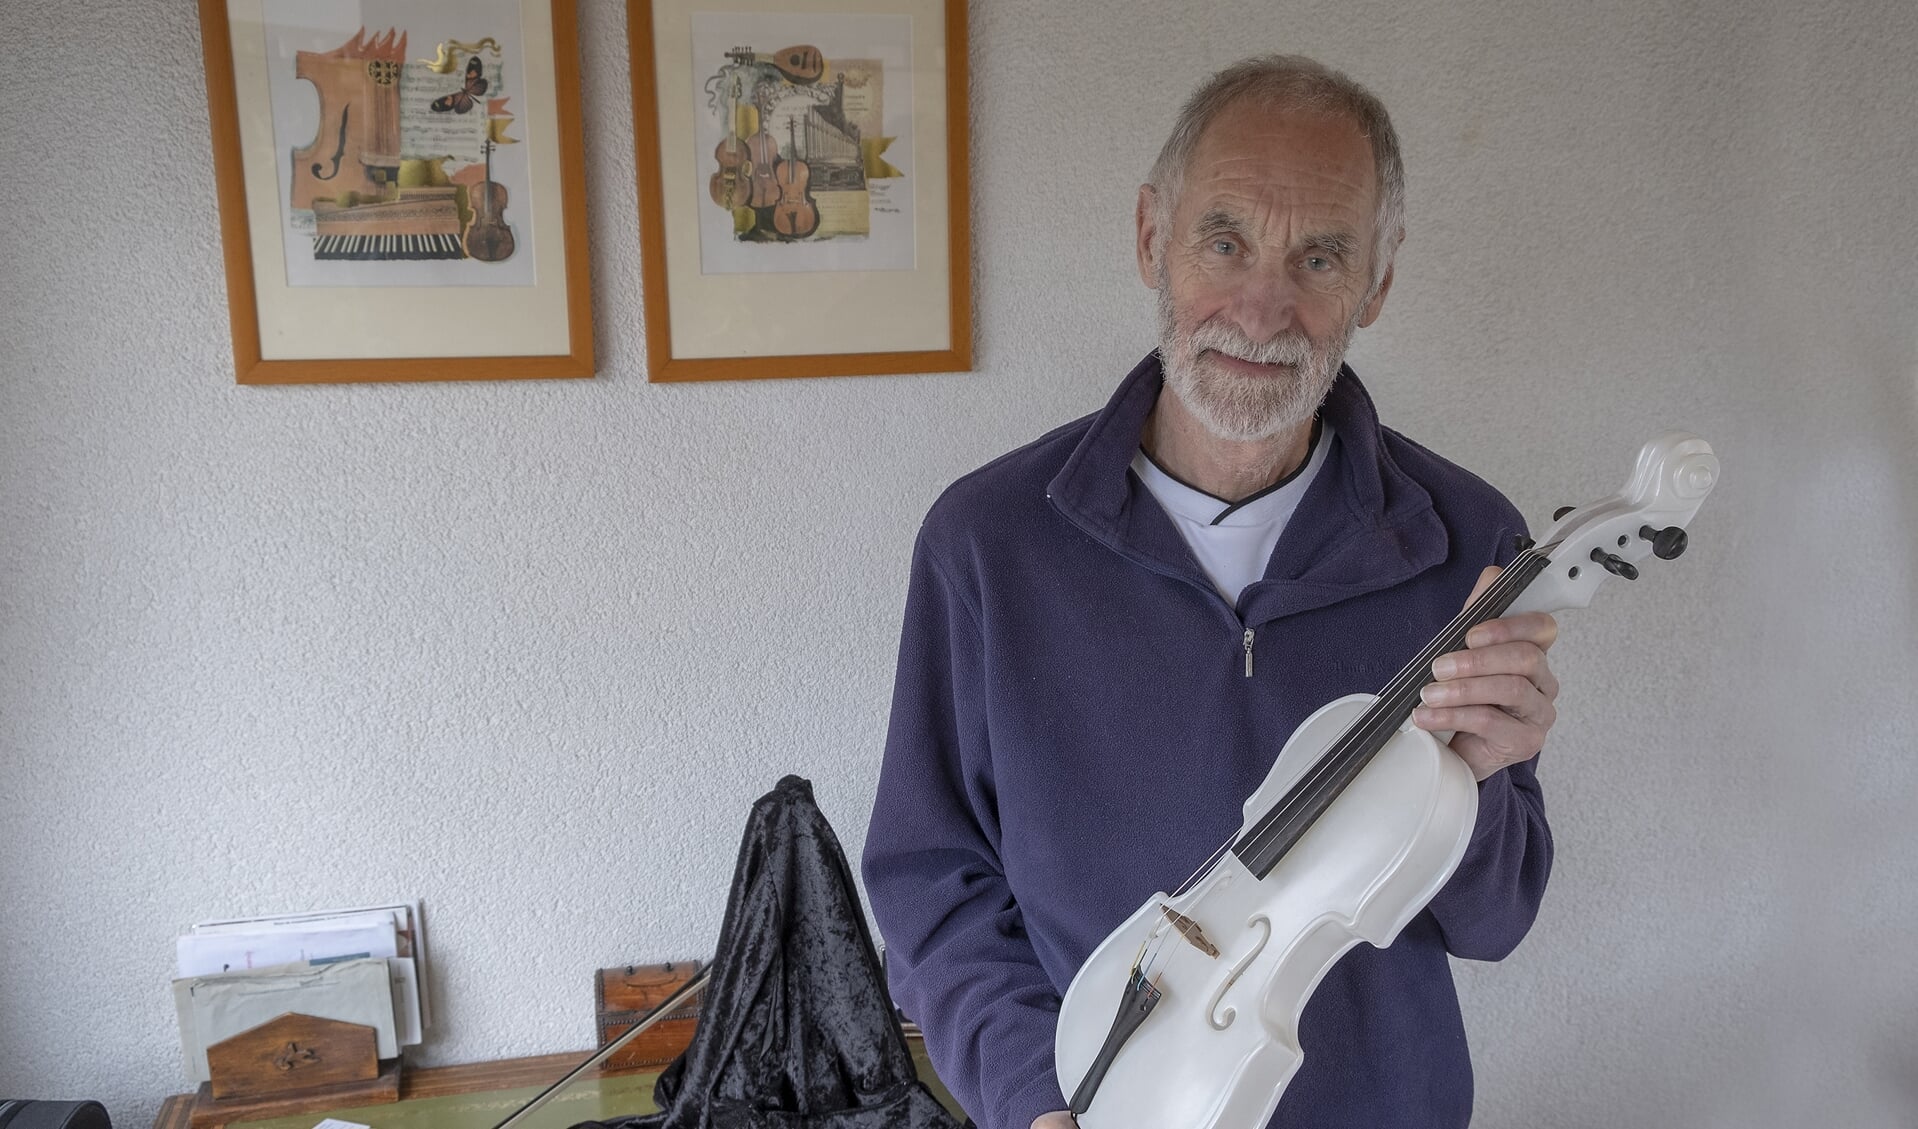 • Kunstenaar Pieter van der Velden met zijn bijzondere viool van albast.